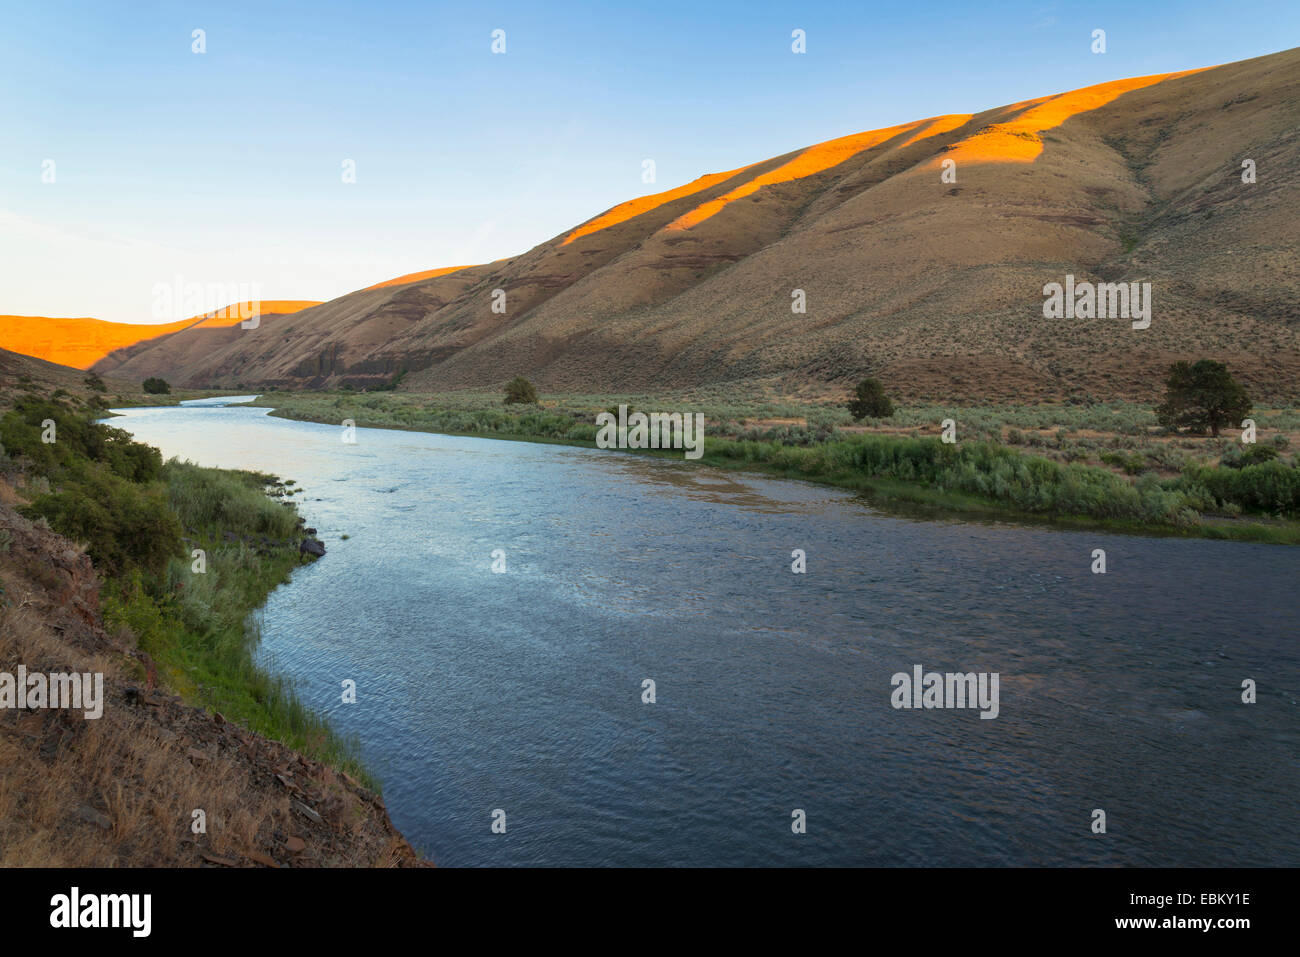 USA, Oregon, John Day River, River at foot of hills Stock Photo